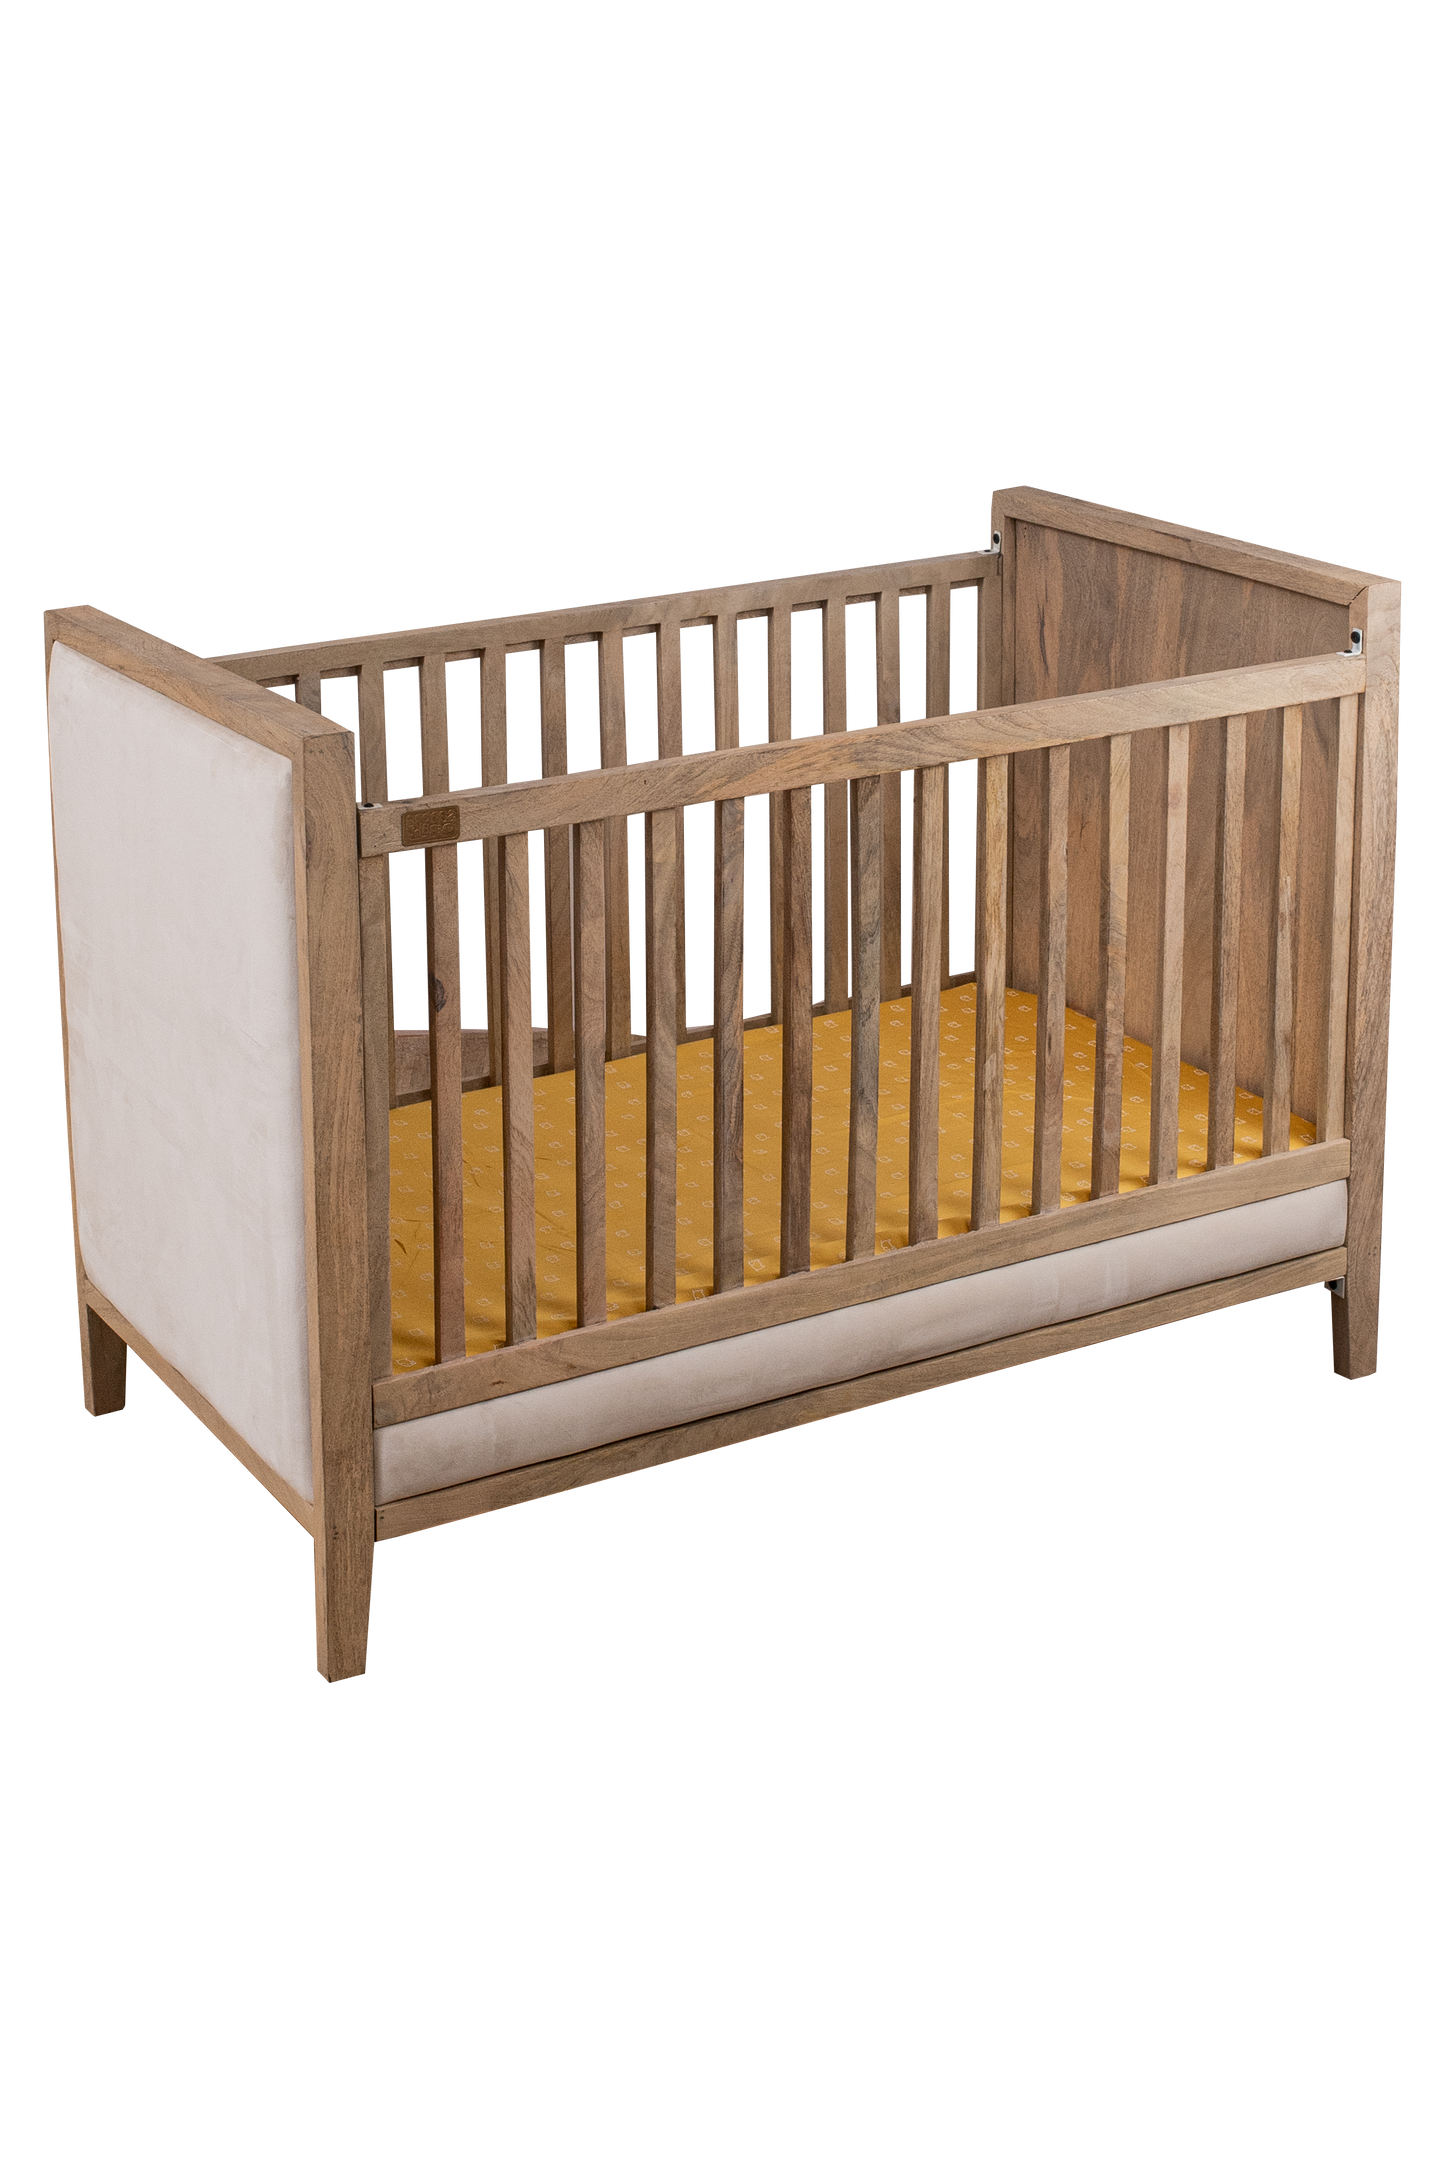 Buy Wooden Baby Cot With Velvet Upholstery - Oat Finish Online - SkilloToys.com